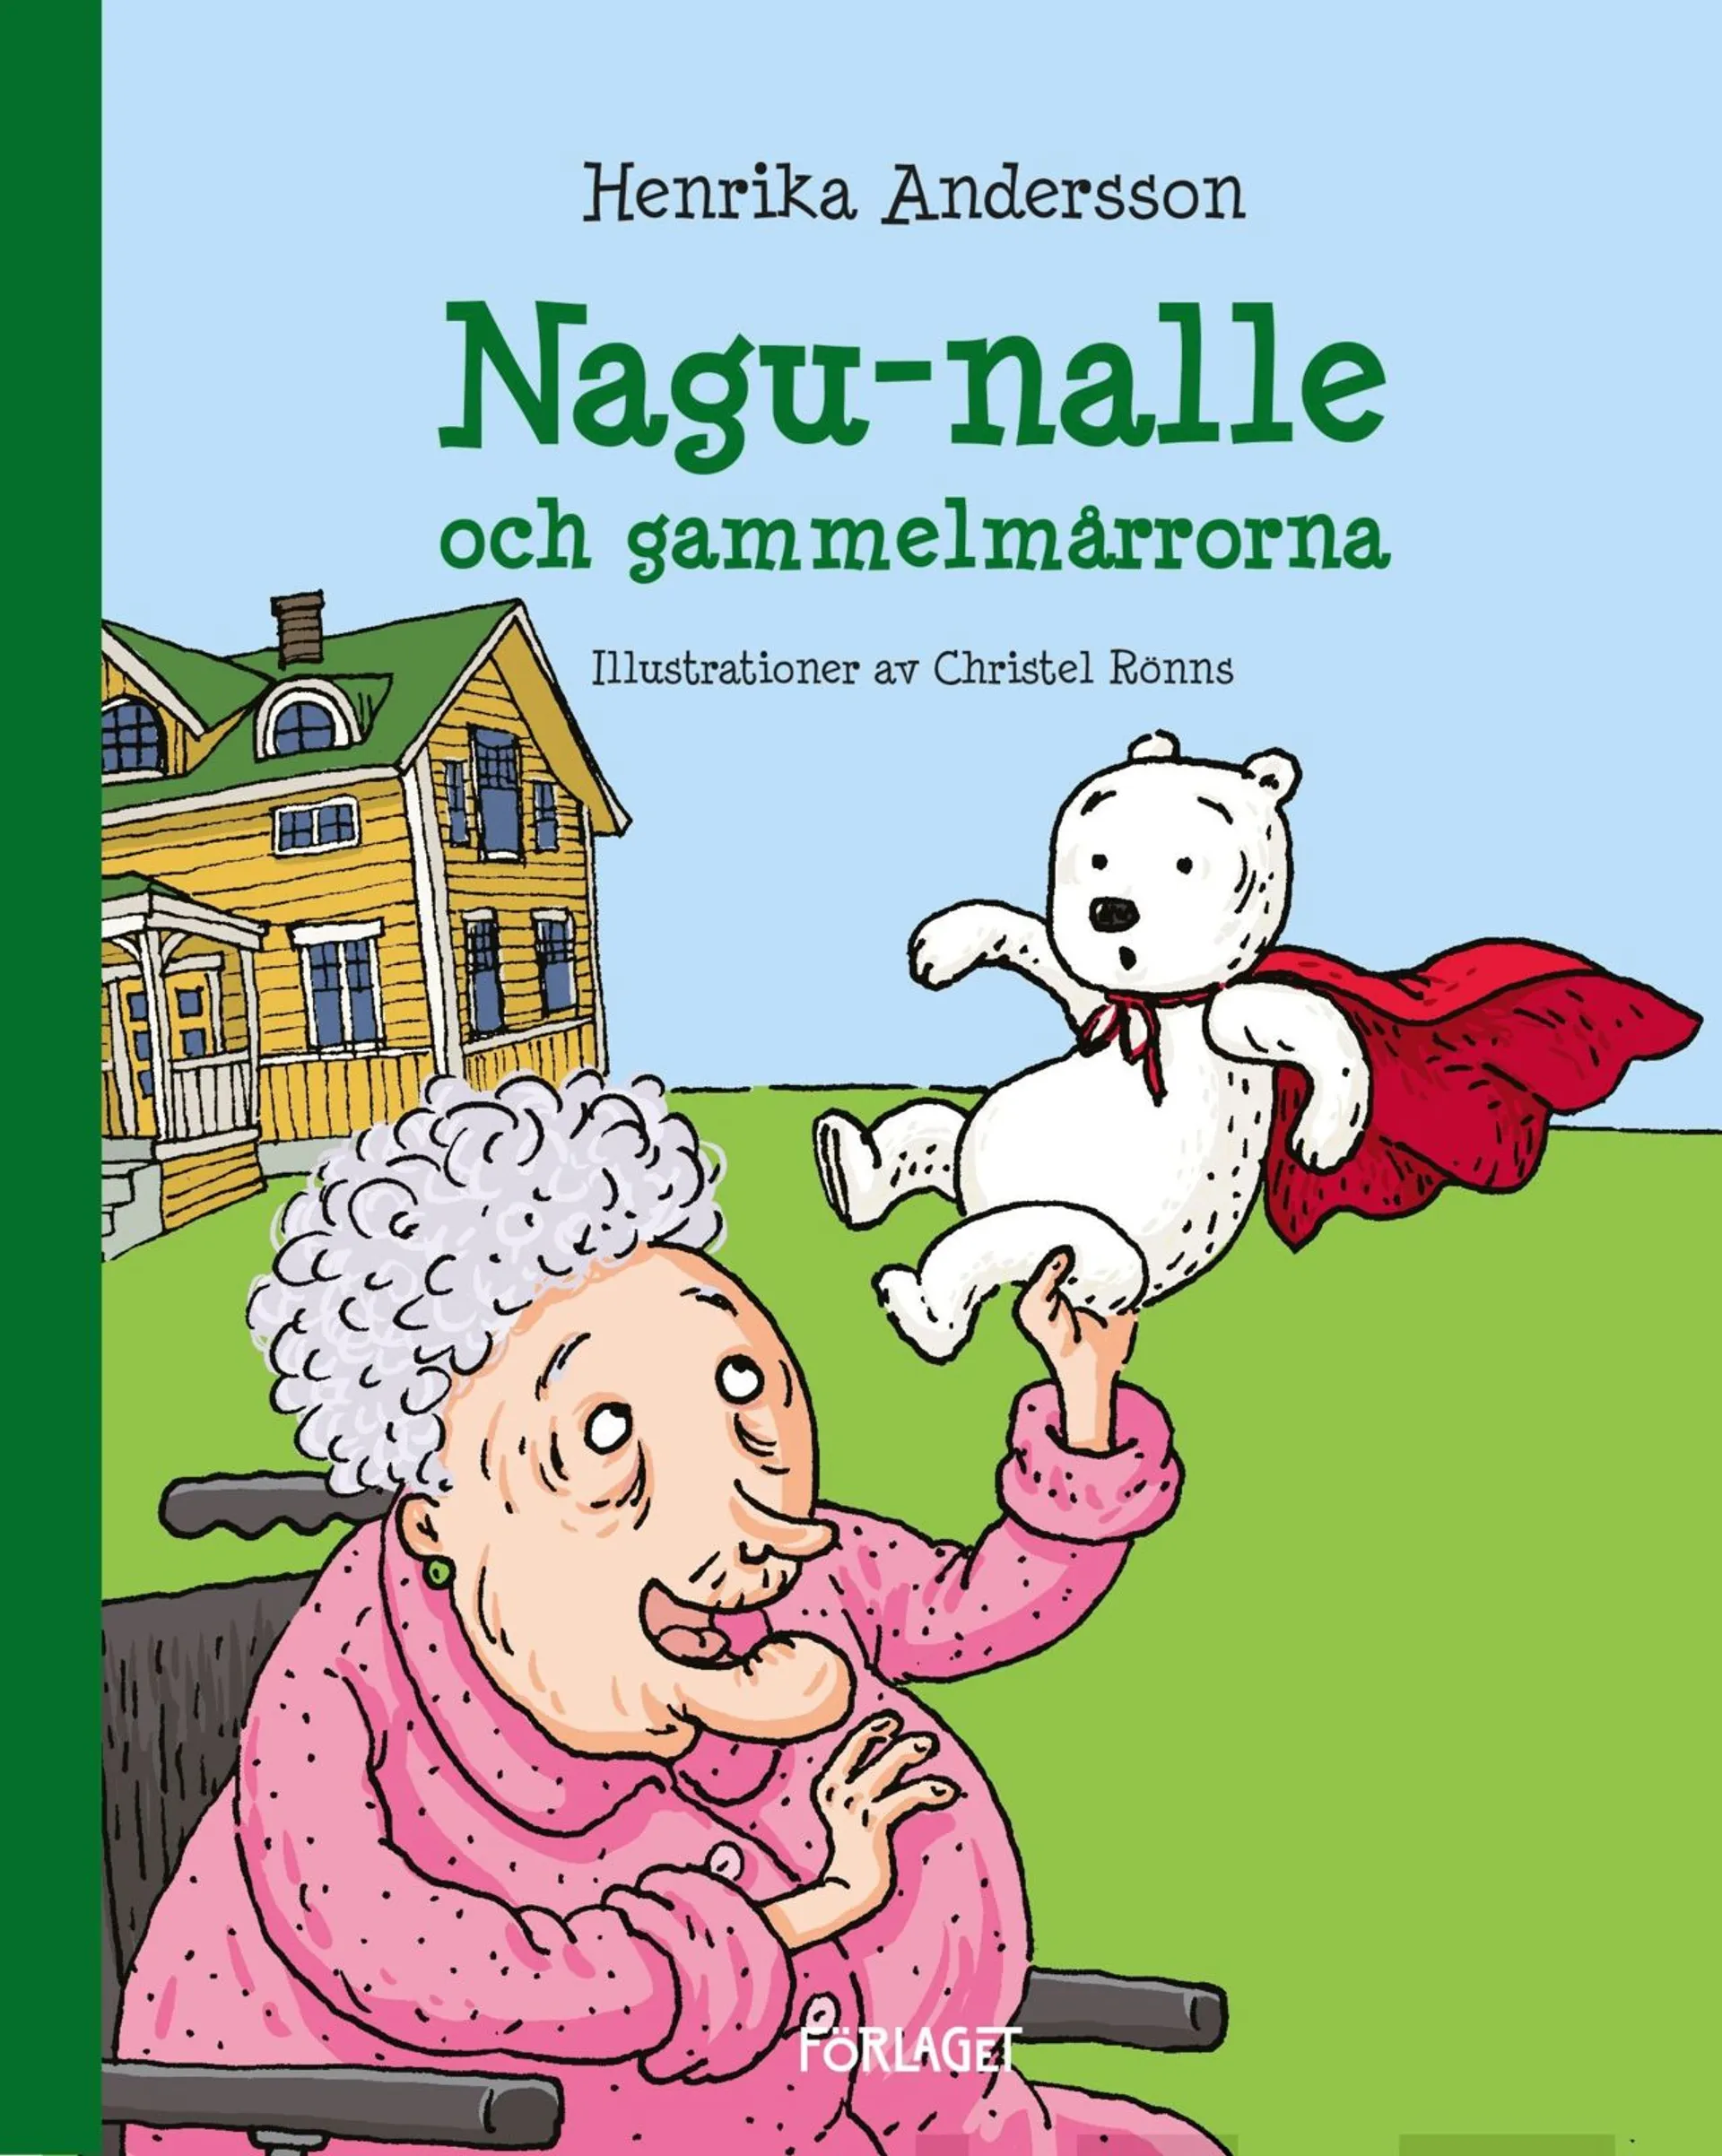 Andersson, Nagu-nalle och gammelmårrorna